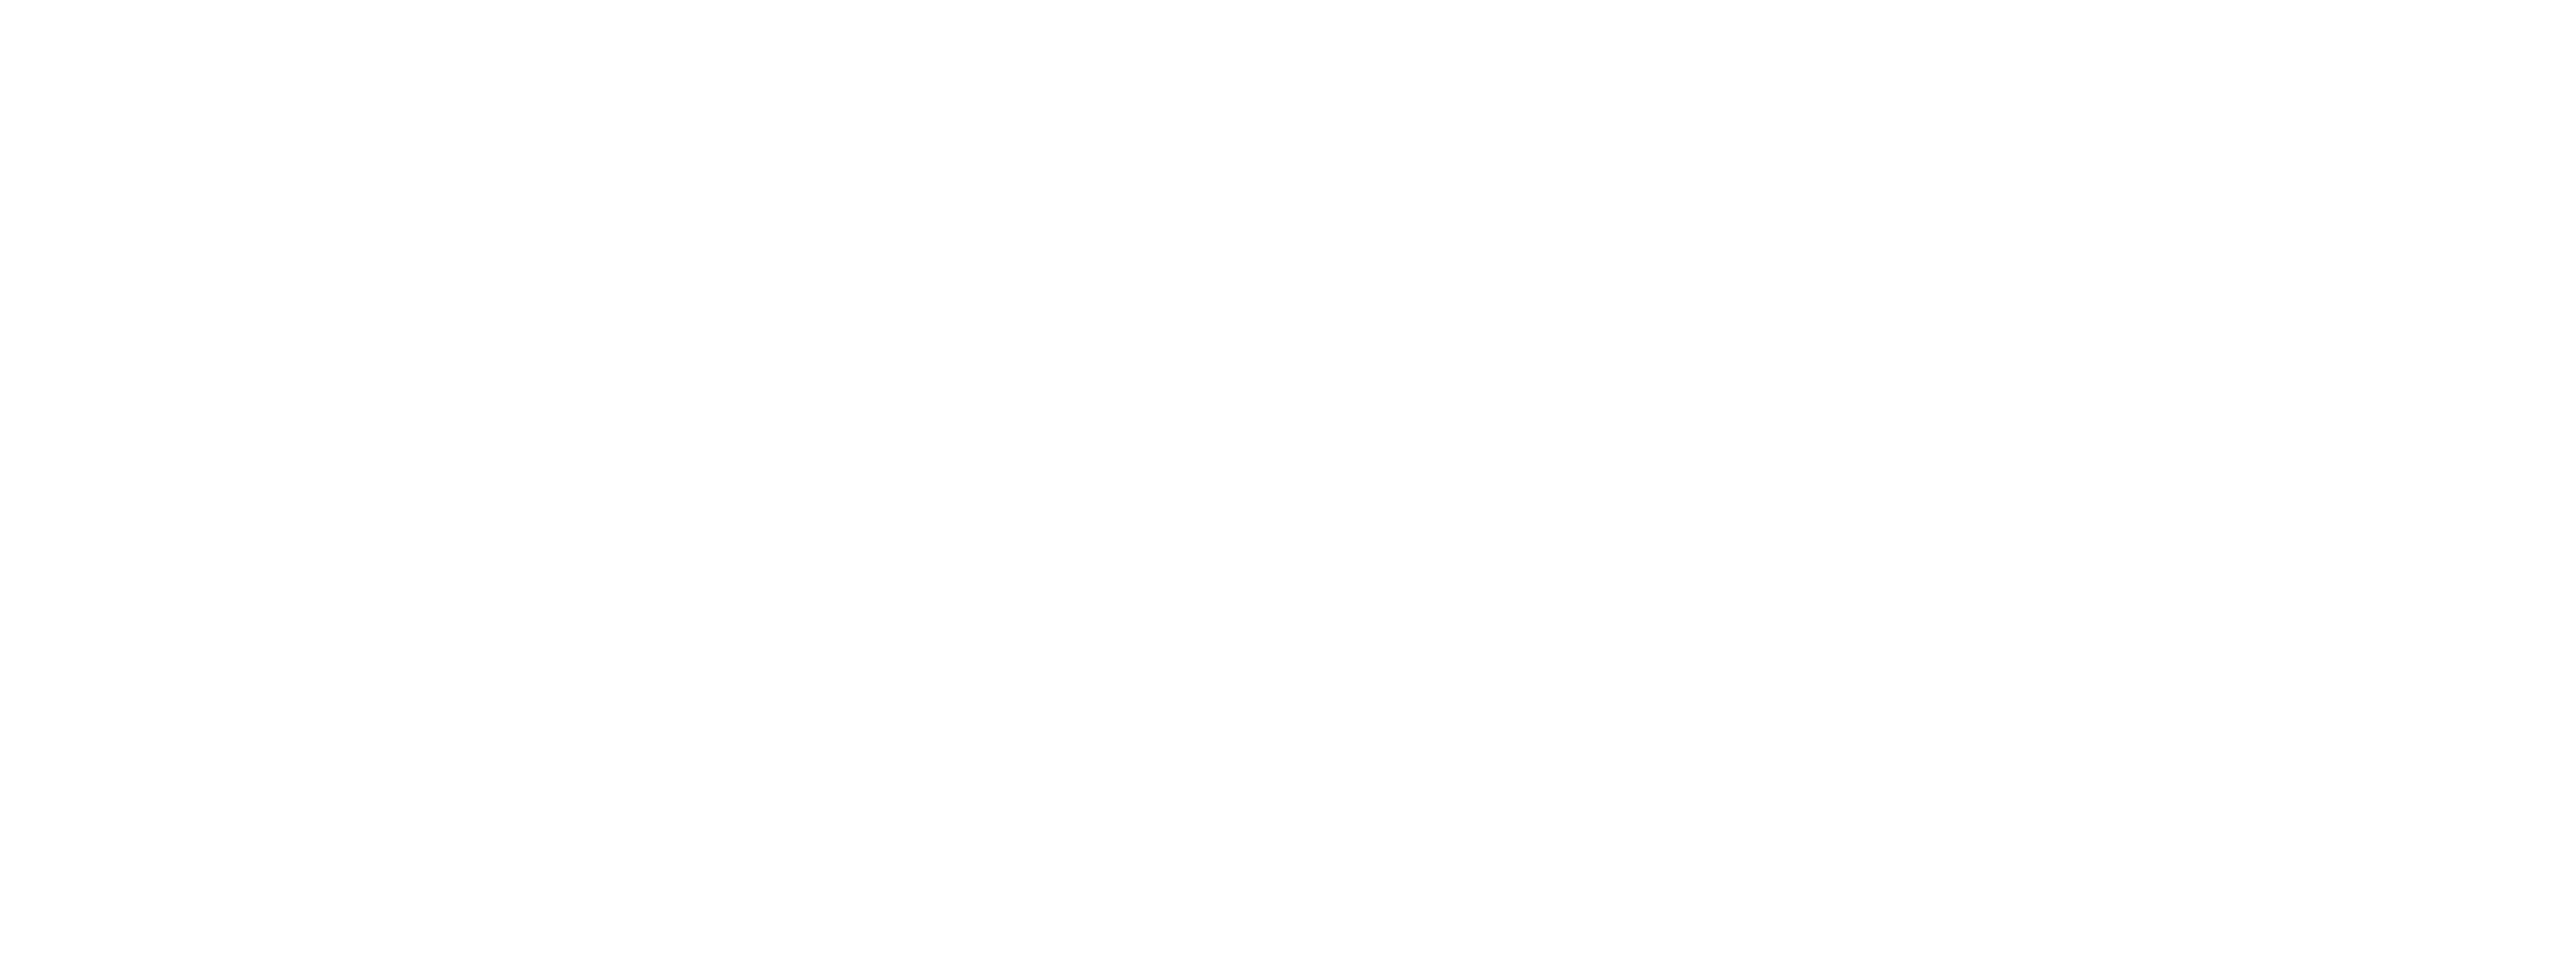 RaymansBowling_Logo_weiß